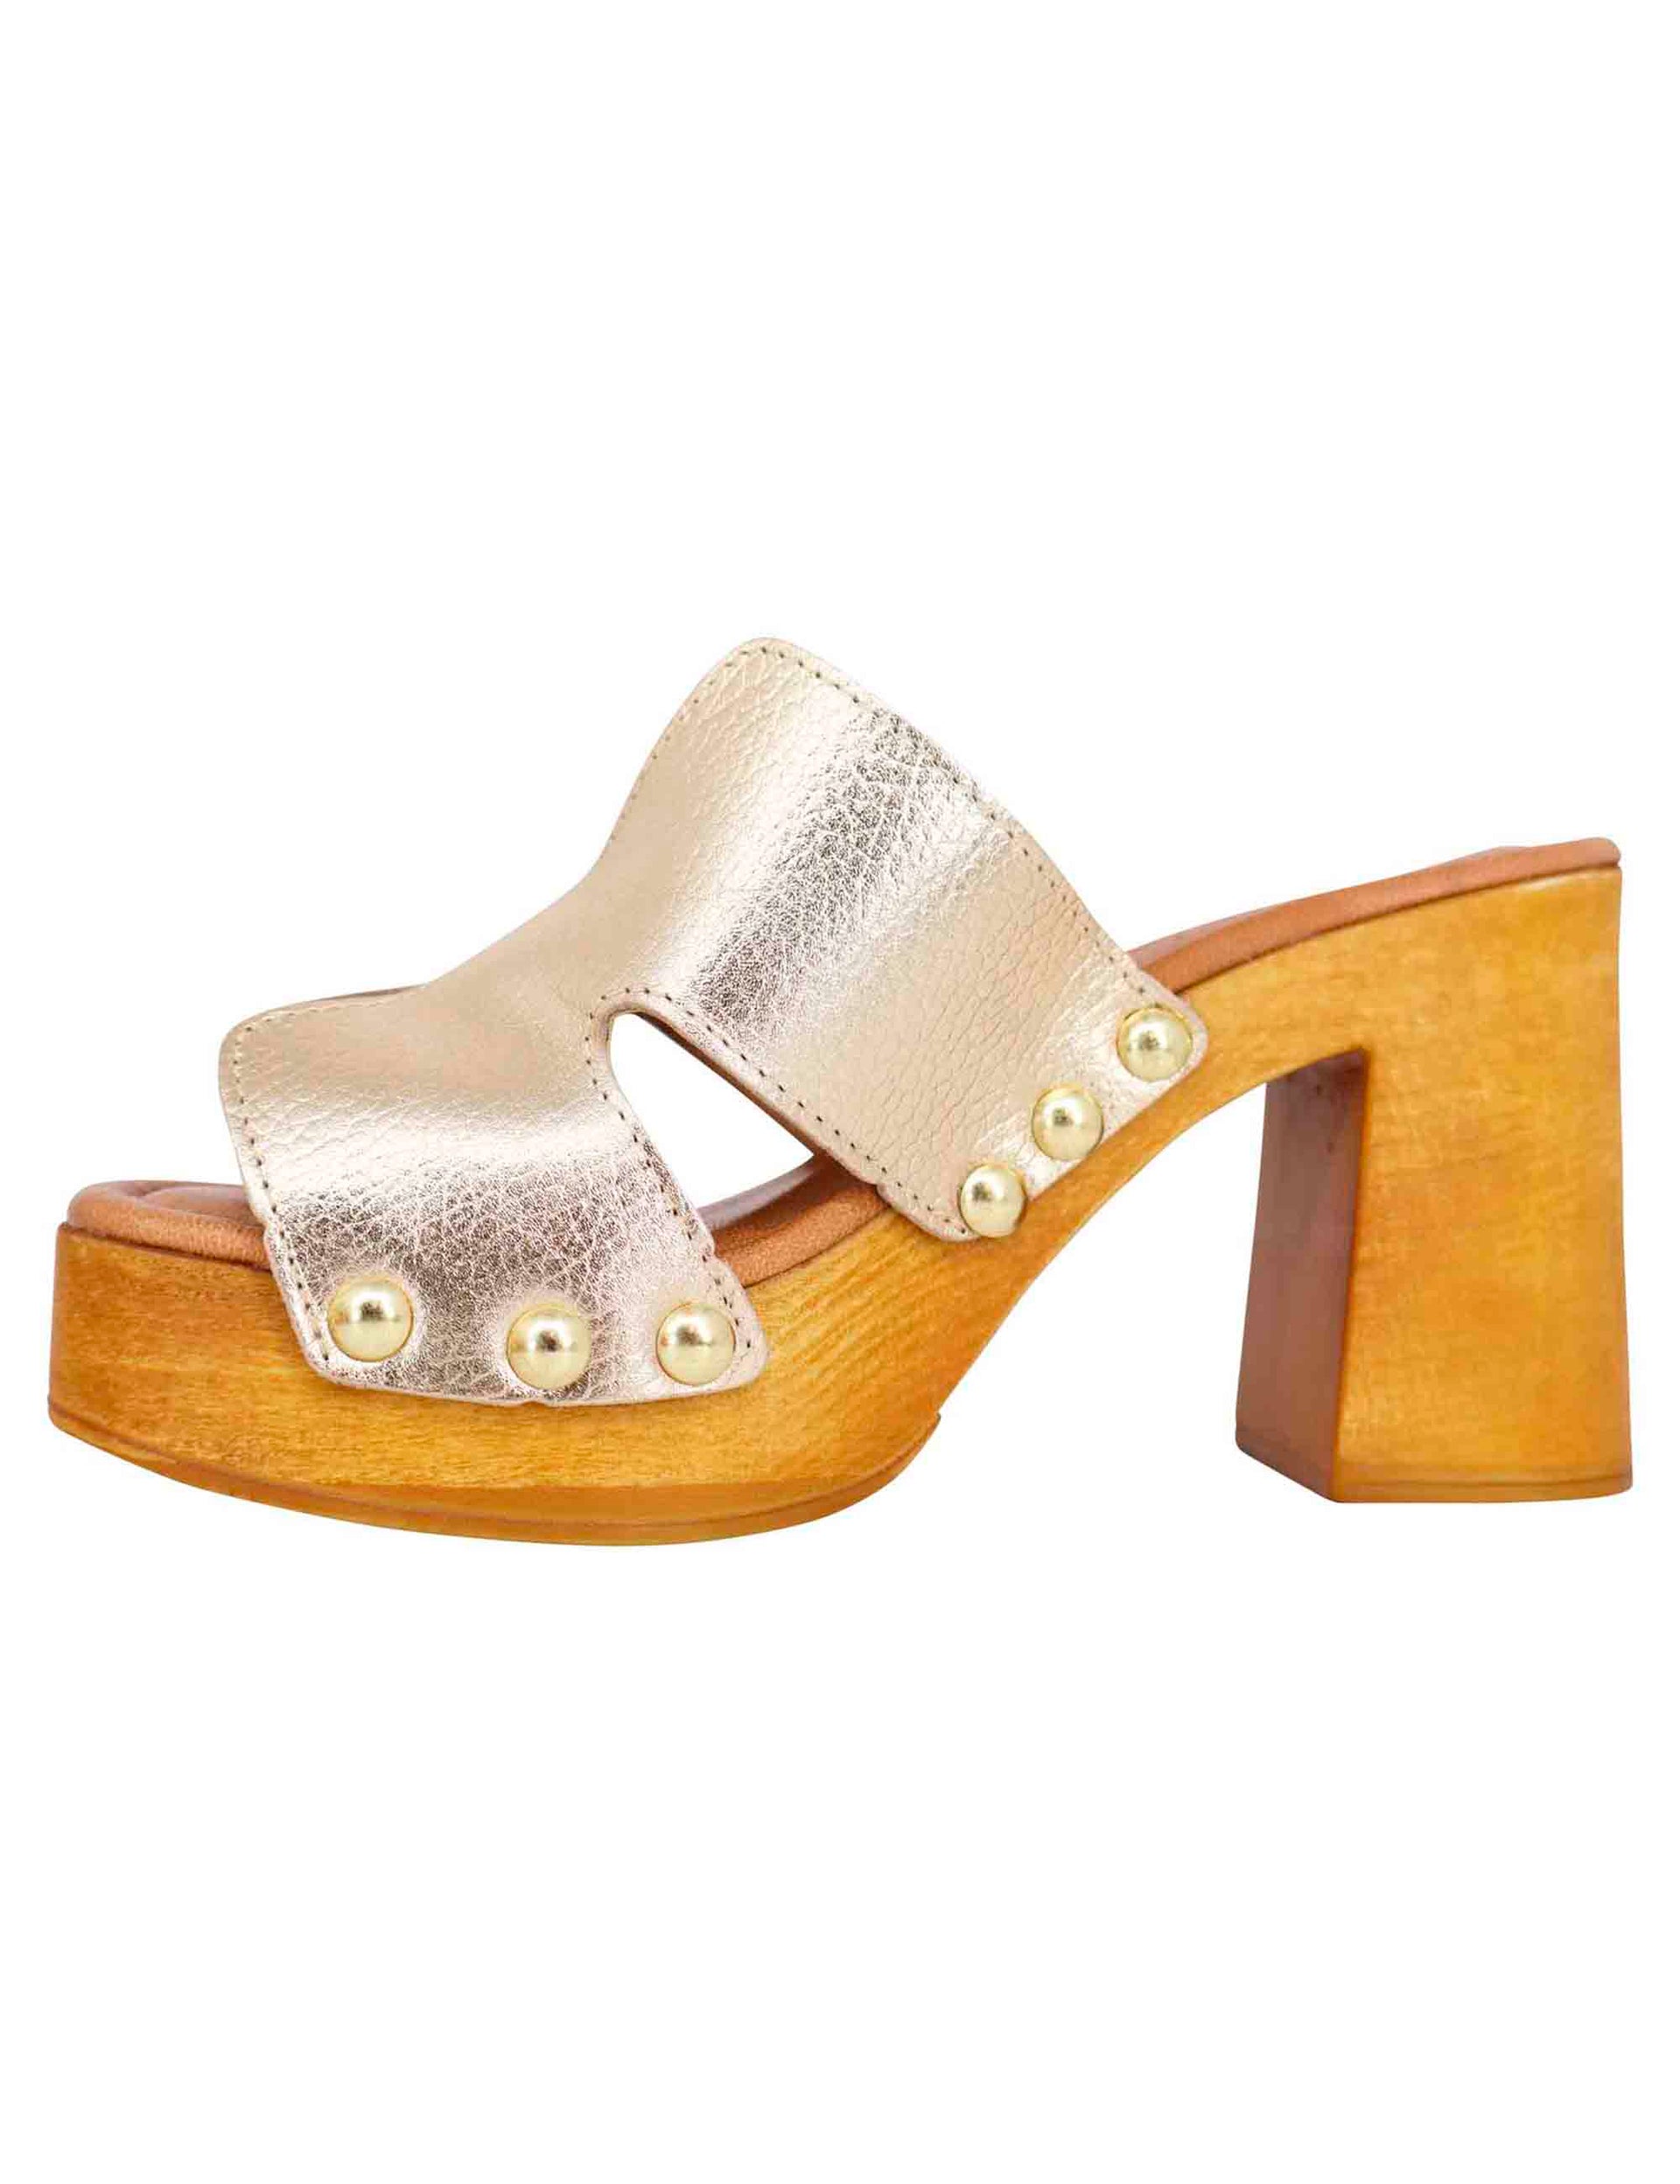 Sandali zoccoli donna in pelle platino con fibbie oro e tacco alto